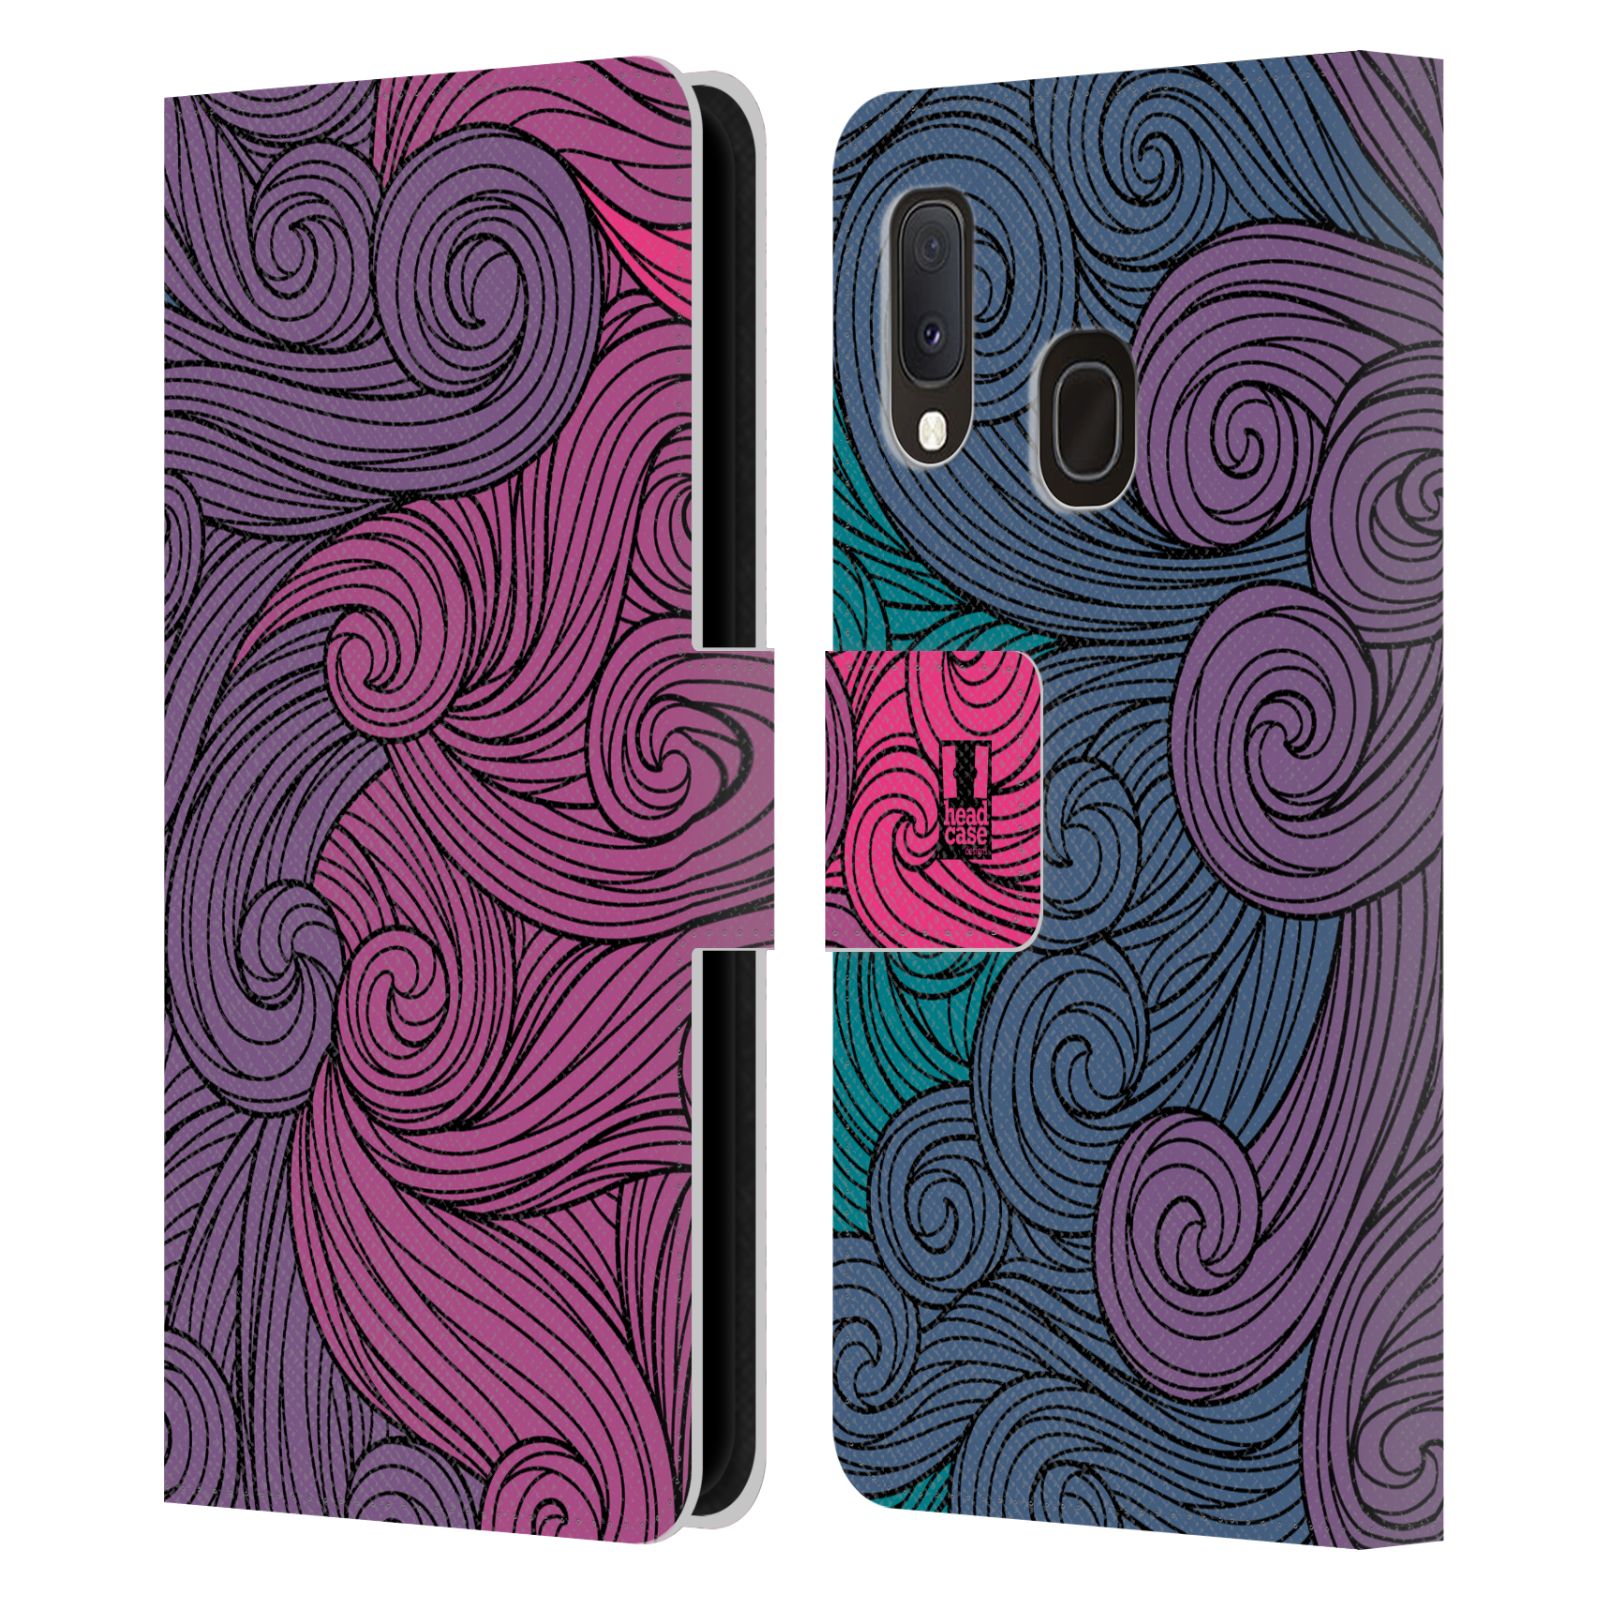 Pouzdro na mobil Samsung Galaxy A20e barevné vlny růžová a modrá